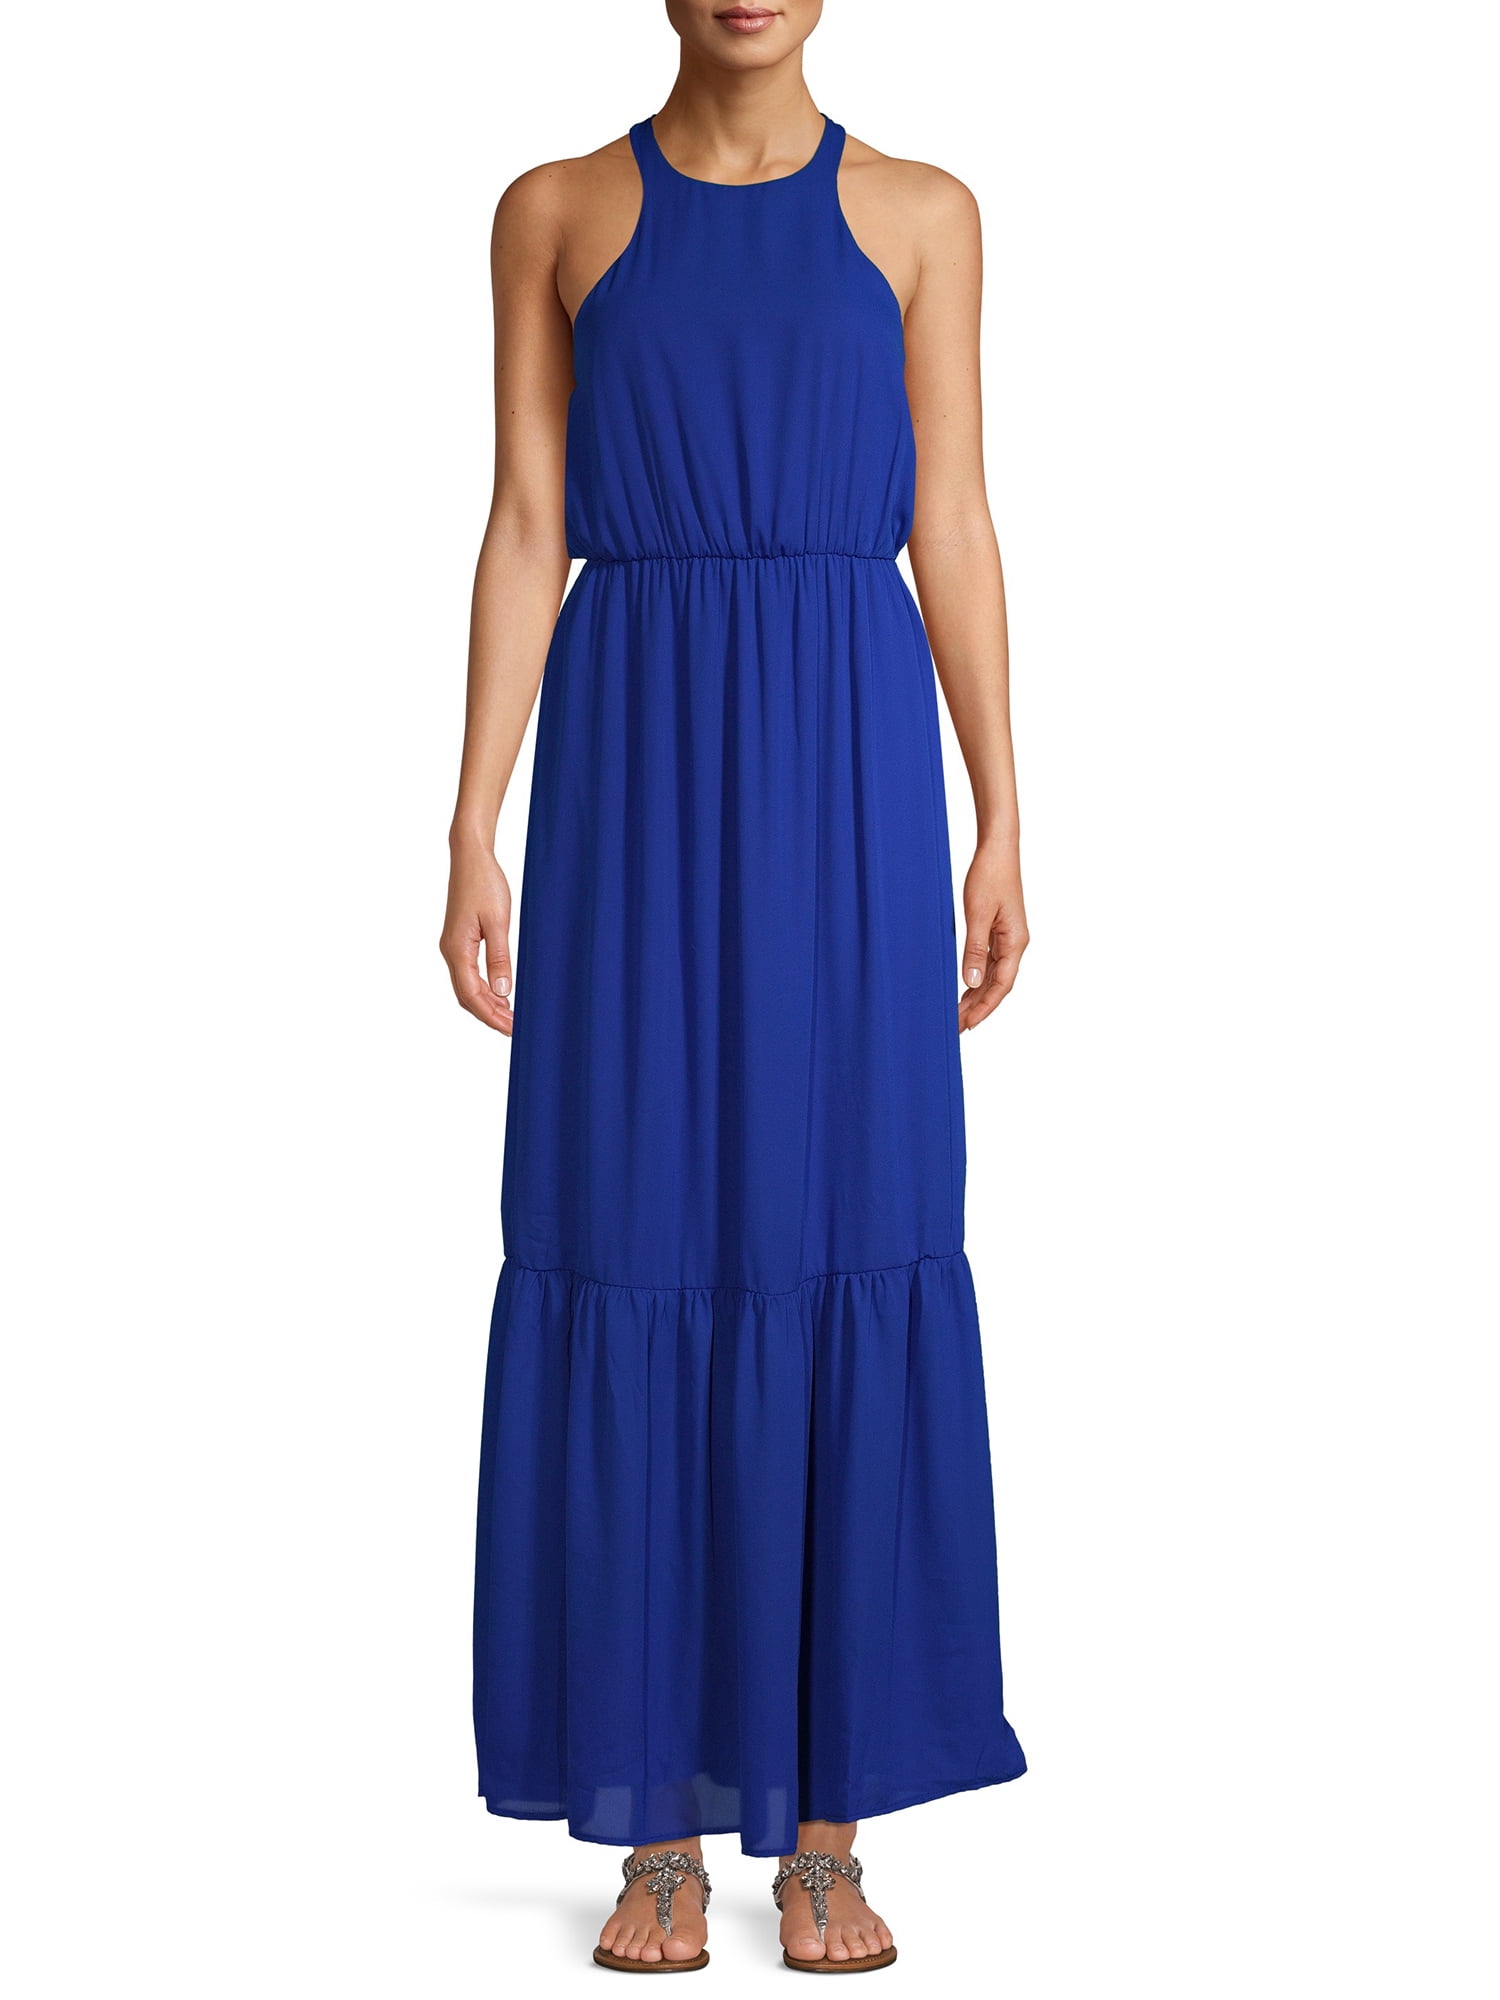 NSR Women's Halter Maxi Dress - Walmart.com